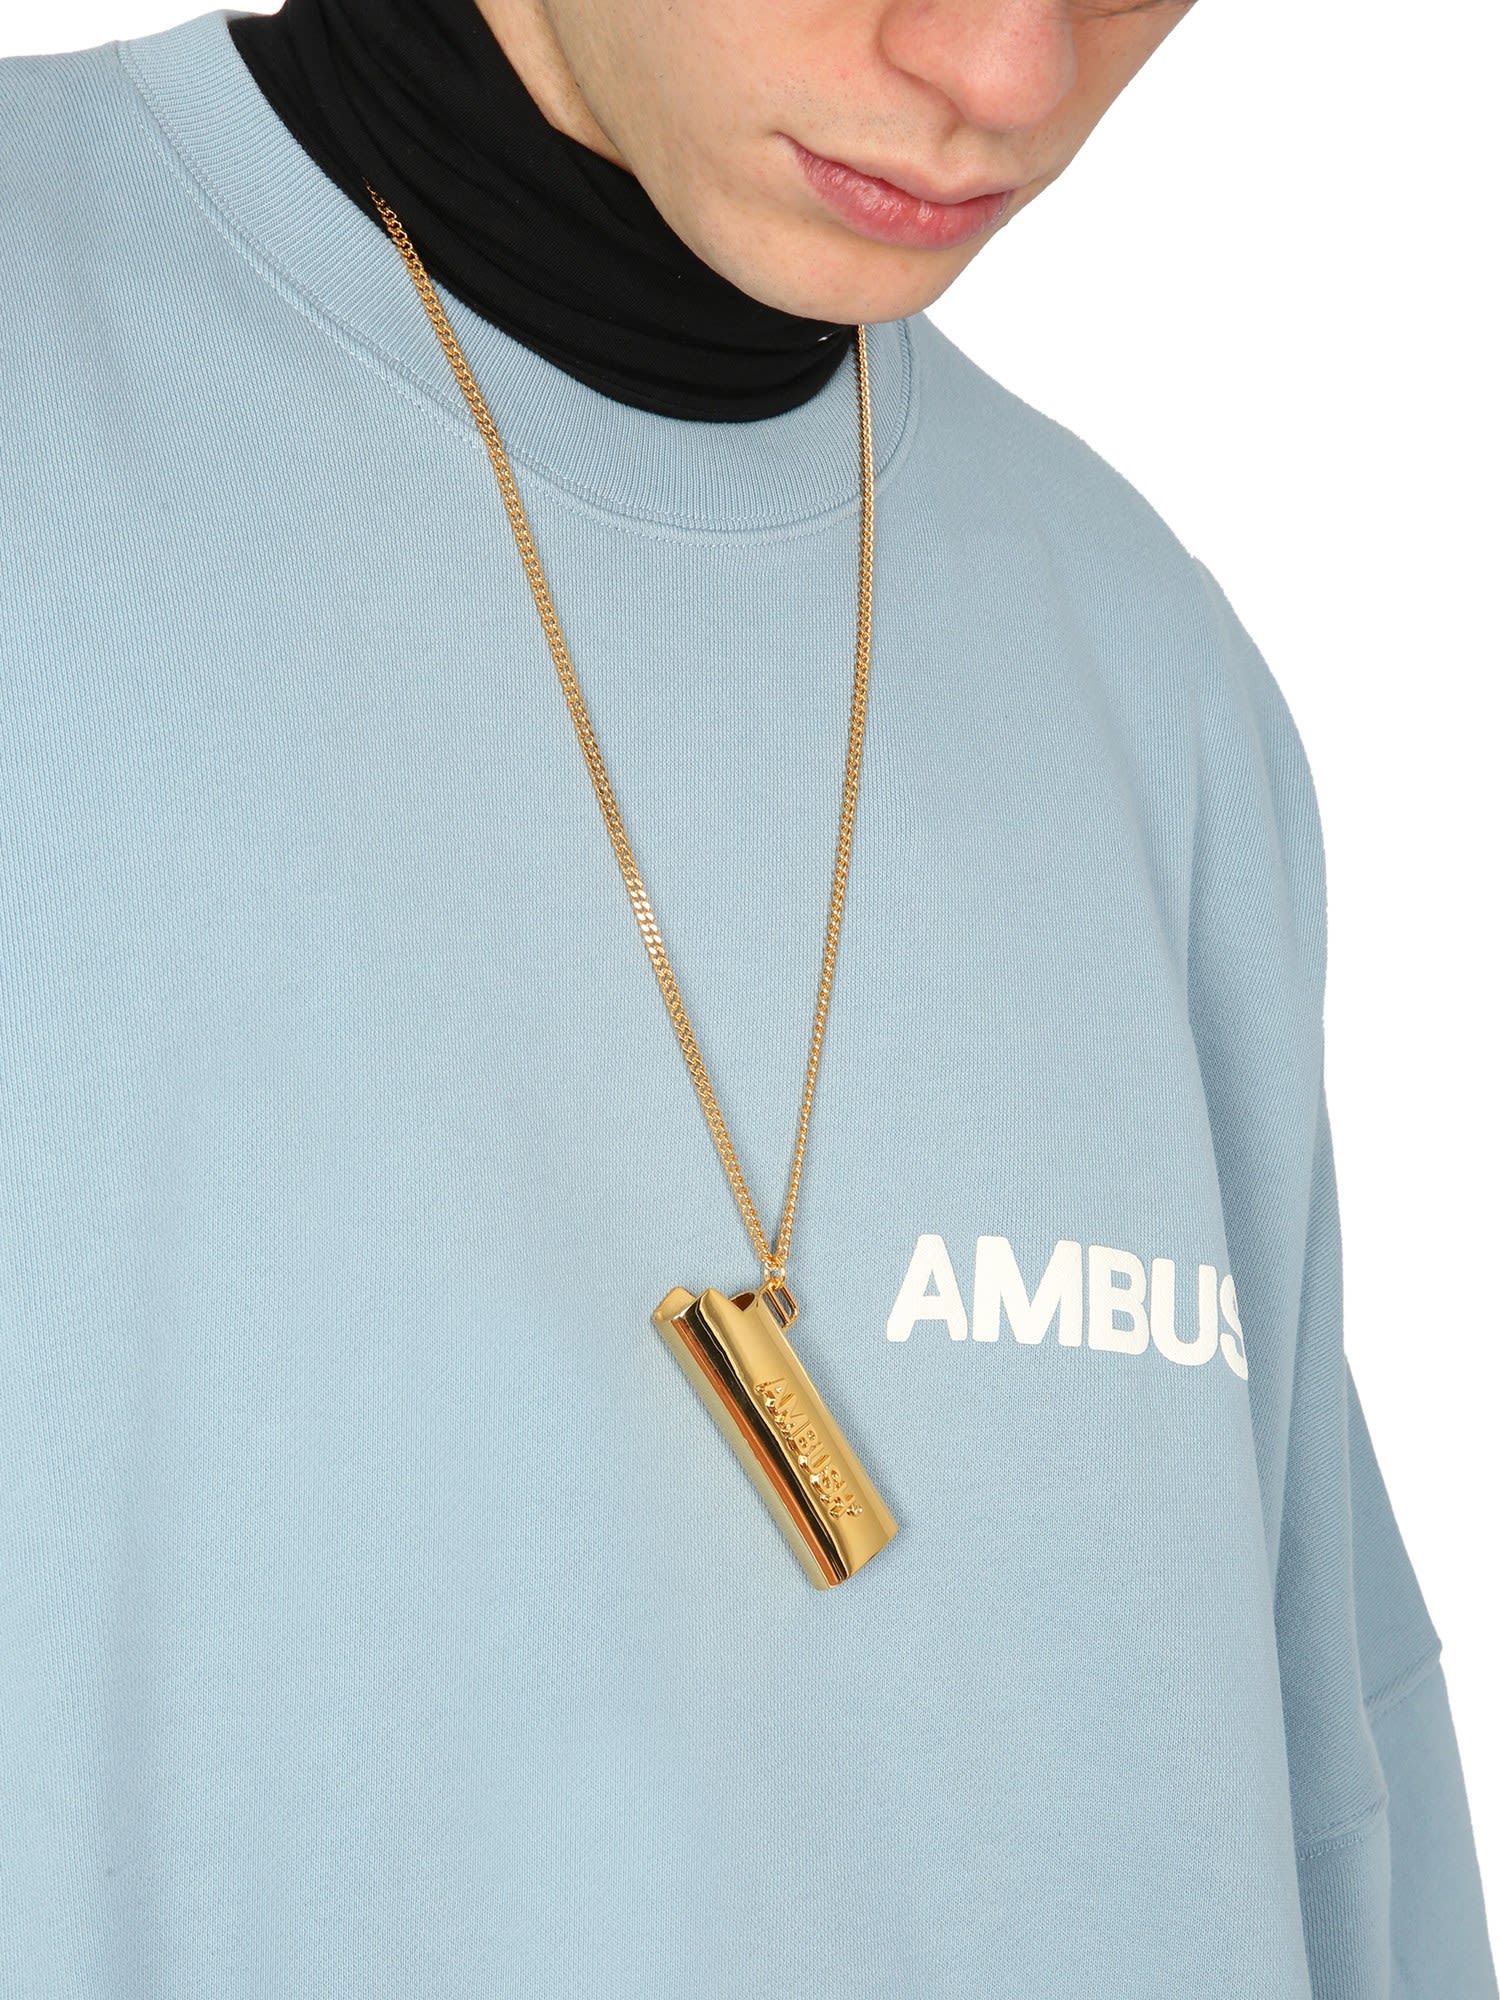 AMBUSH Large Lighter Holder Necklace